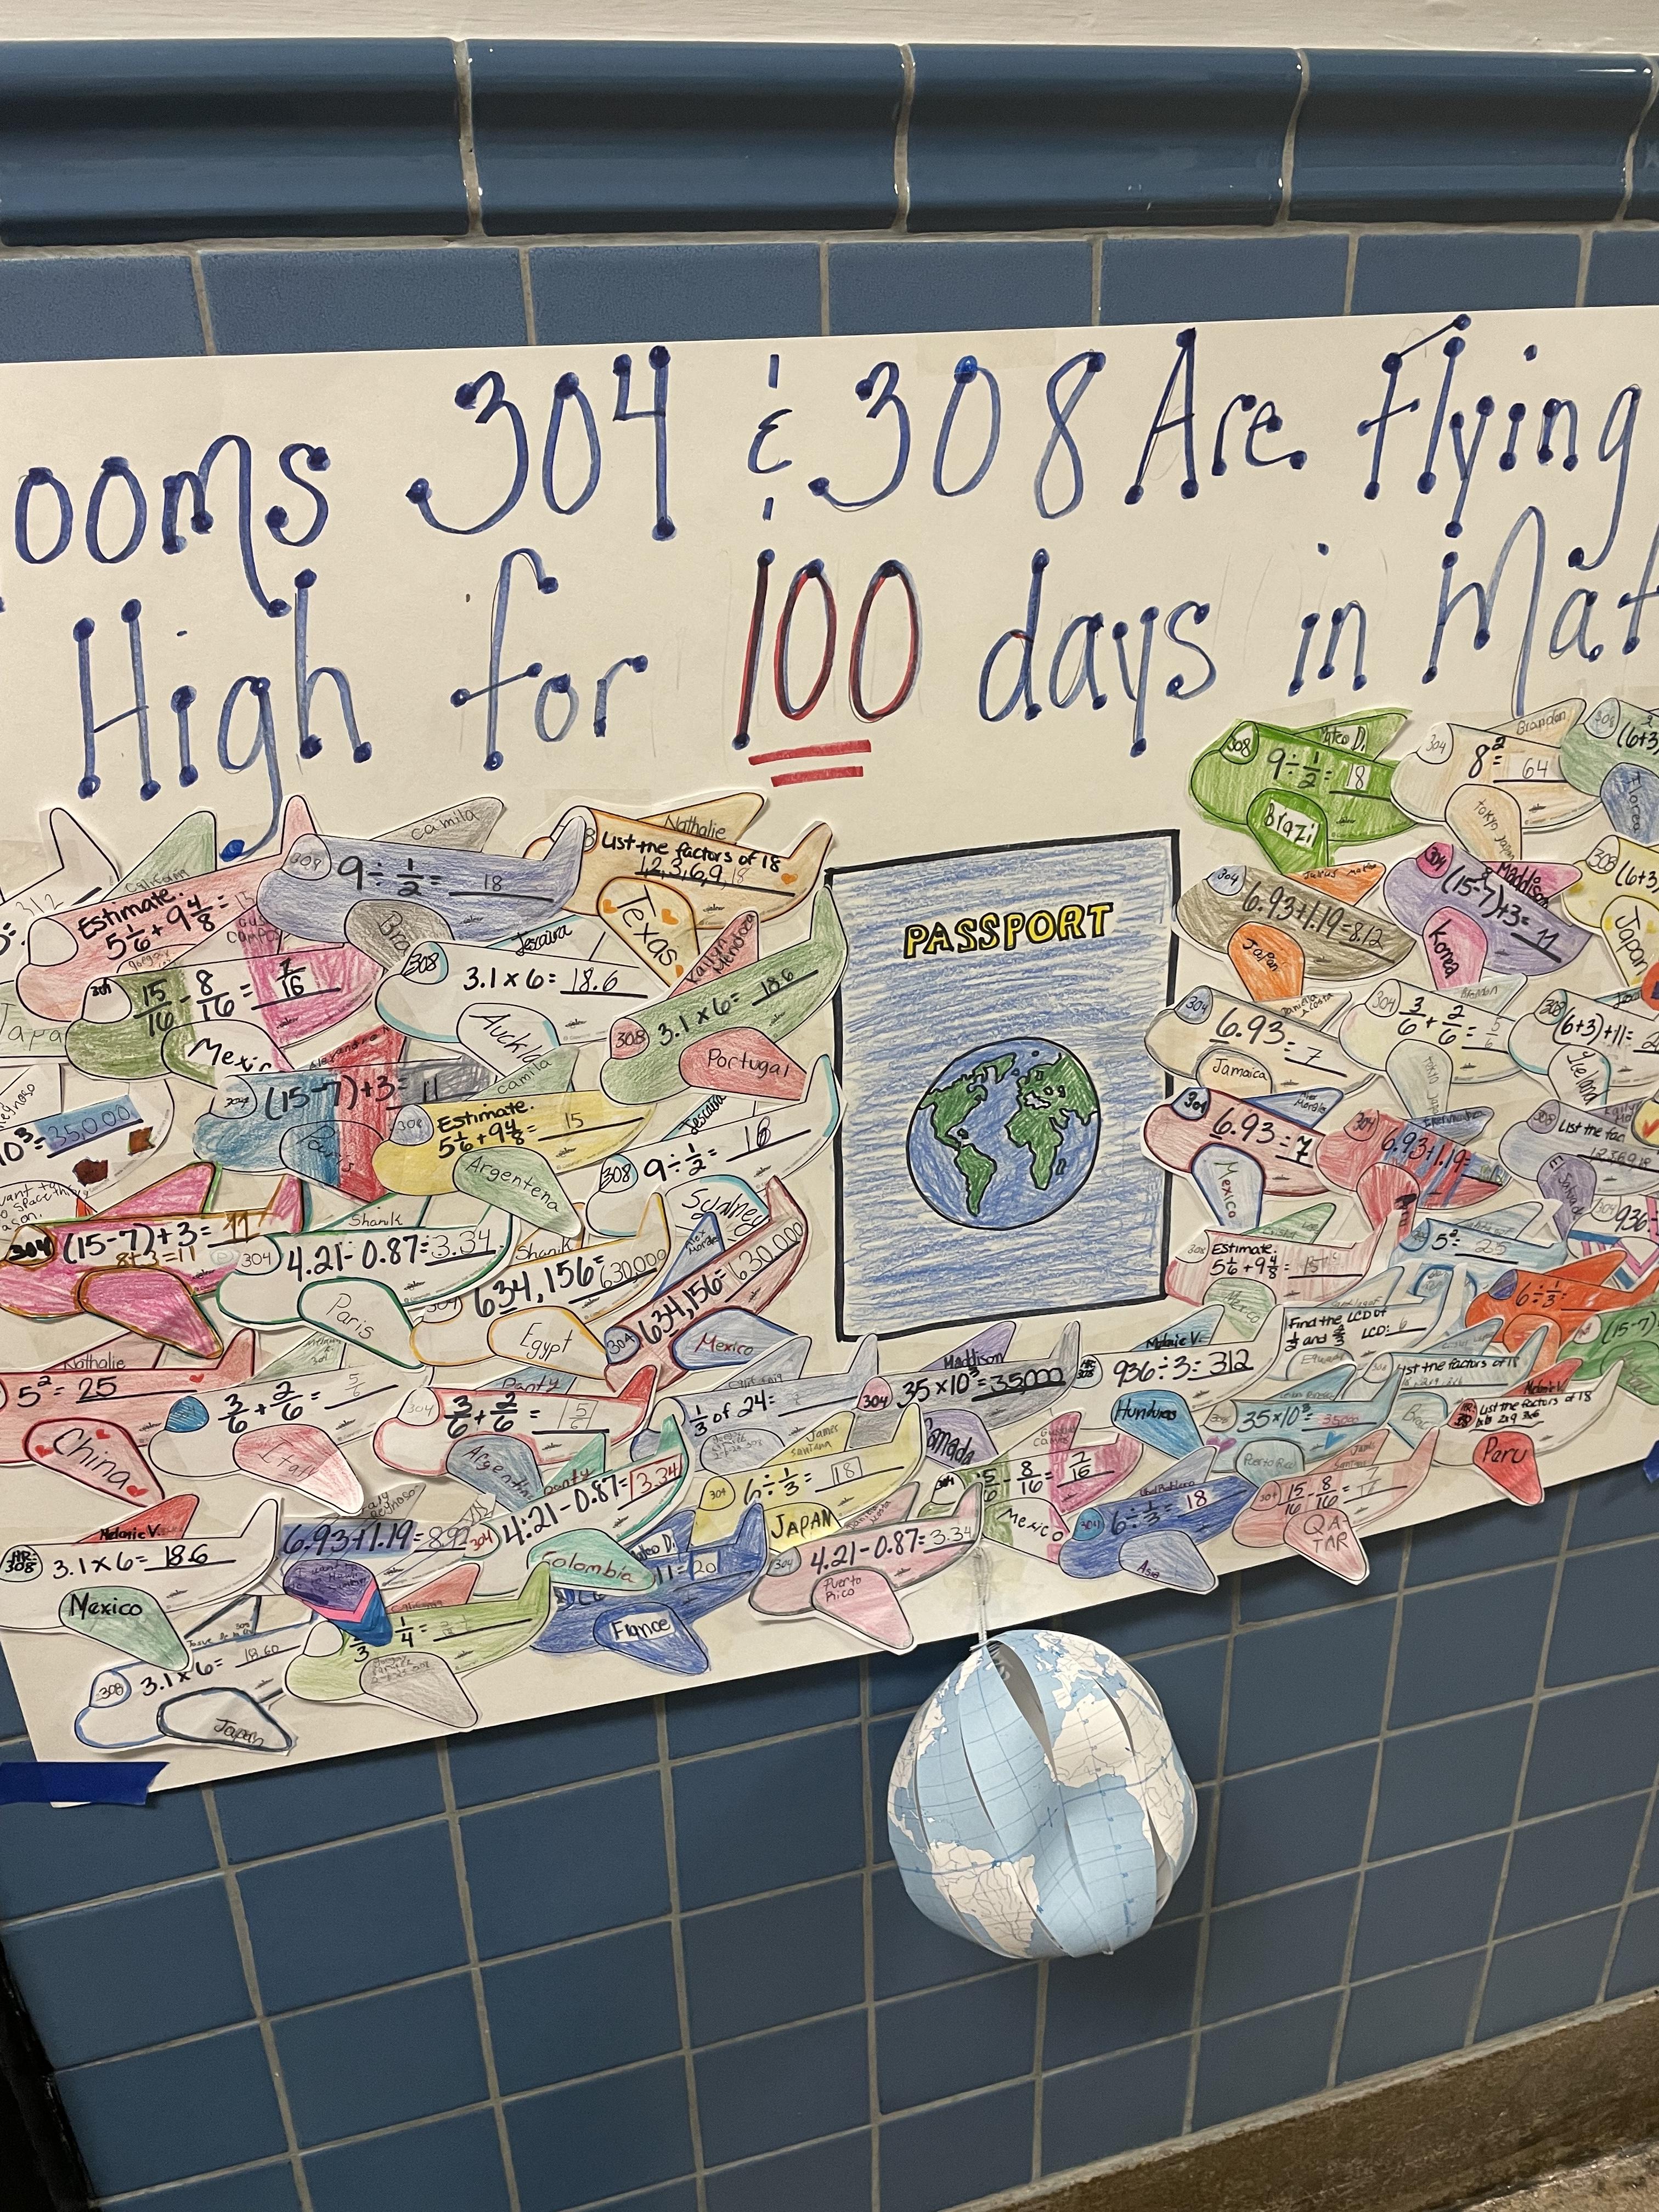 Celebrating 100 Days at the Washington School